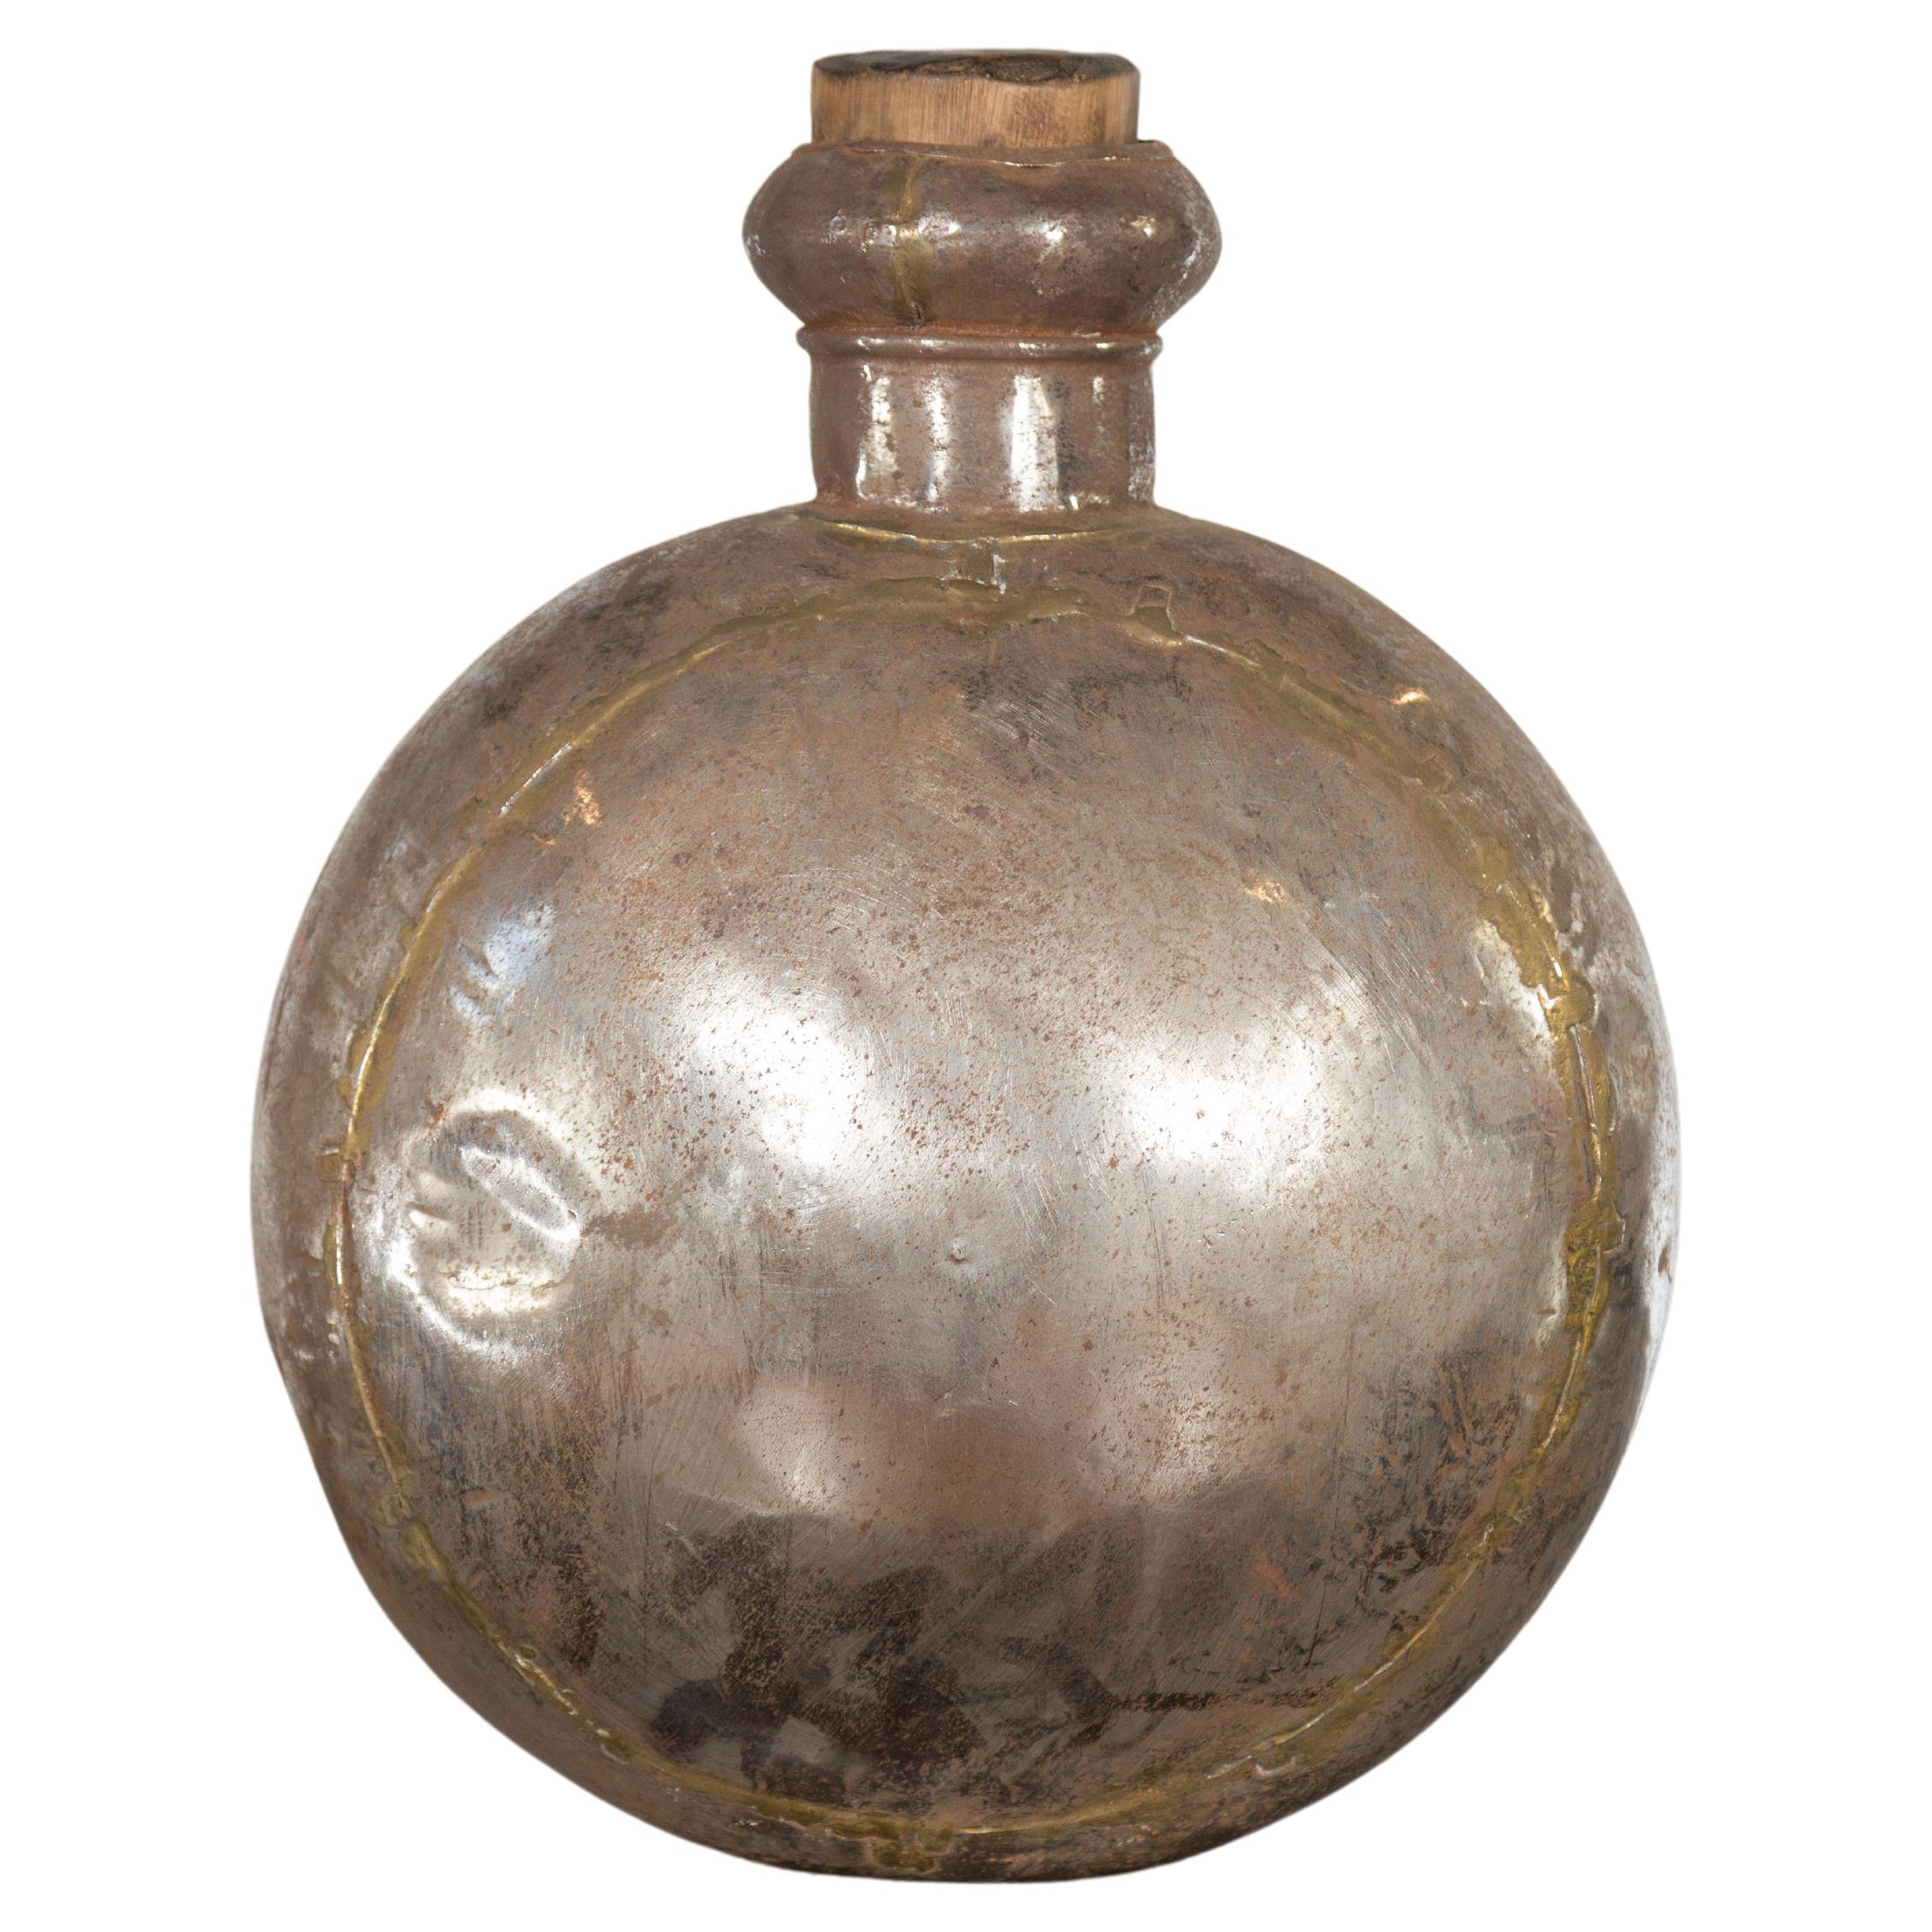 Indische Vintage-Wasservase aus Metall im Kork-Stil mit rundem Kork-Top und kreisförmigem Gehäuse